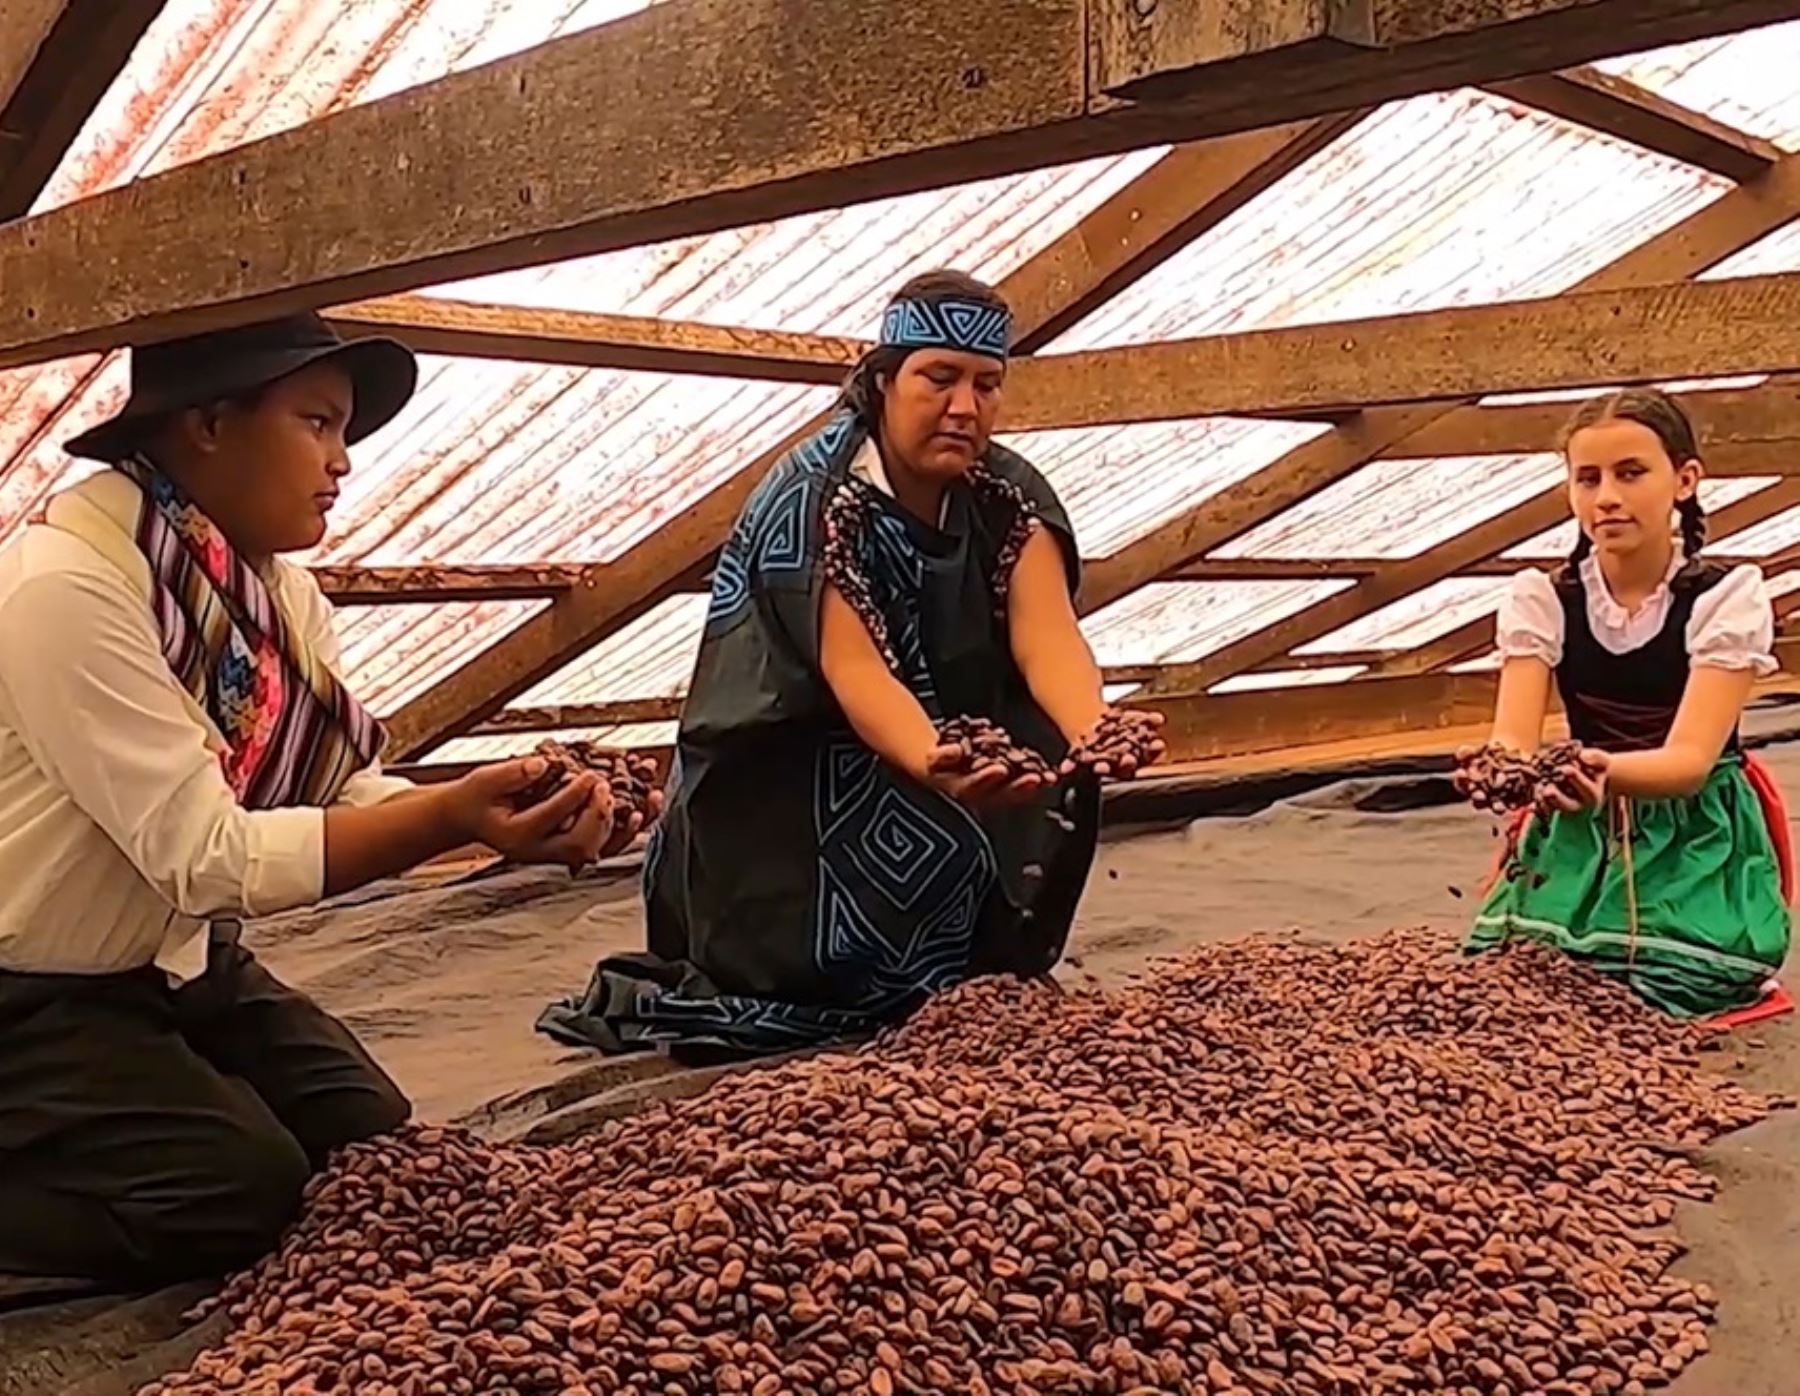 La Municipalidad de Oxapampa lanzó una certificación que garantiza la calidad del cacao, café y otros que se producen en la Reserva de Biósfera Oxapampa Asháninka Yánesha.